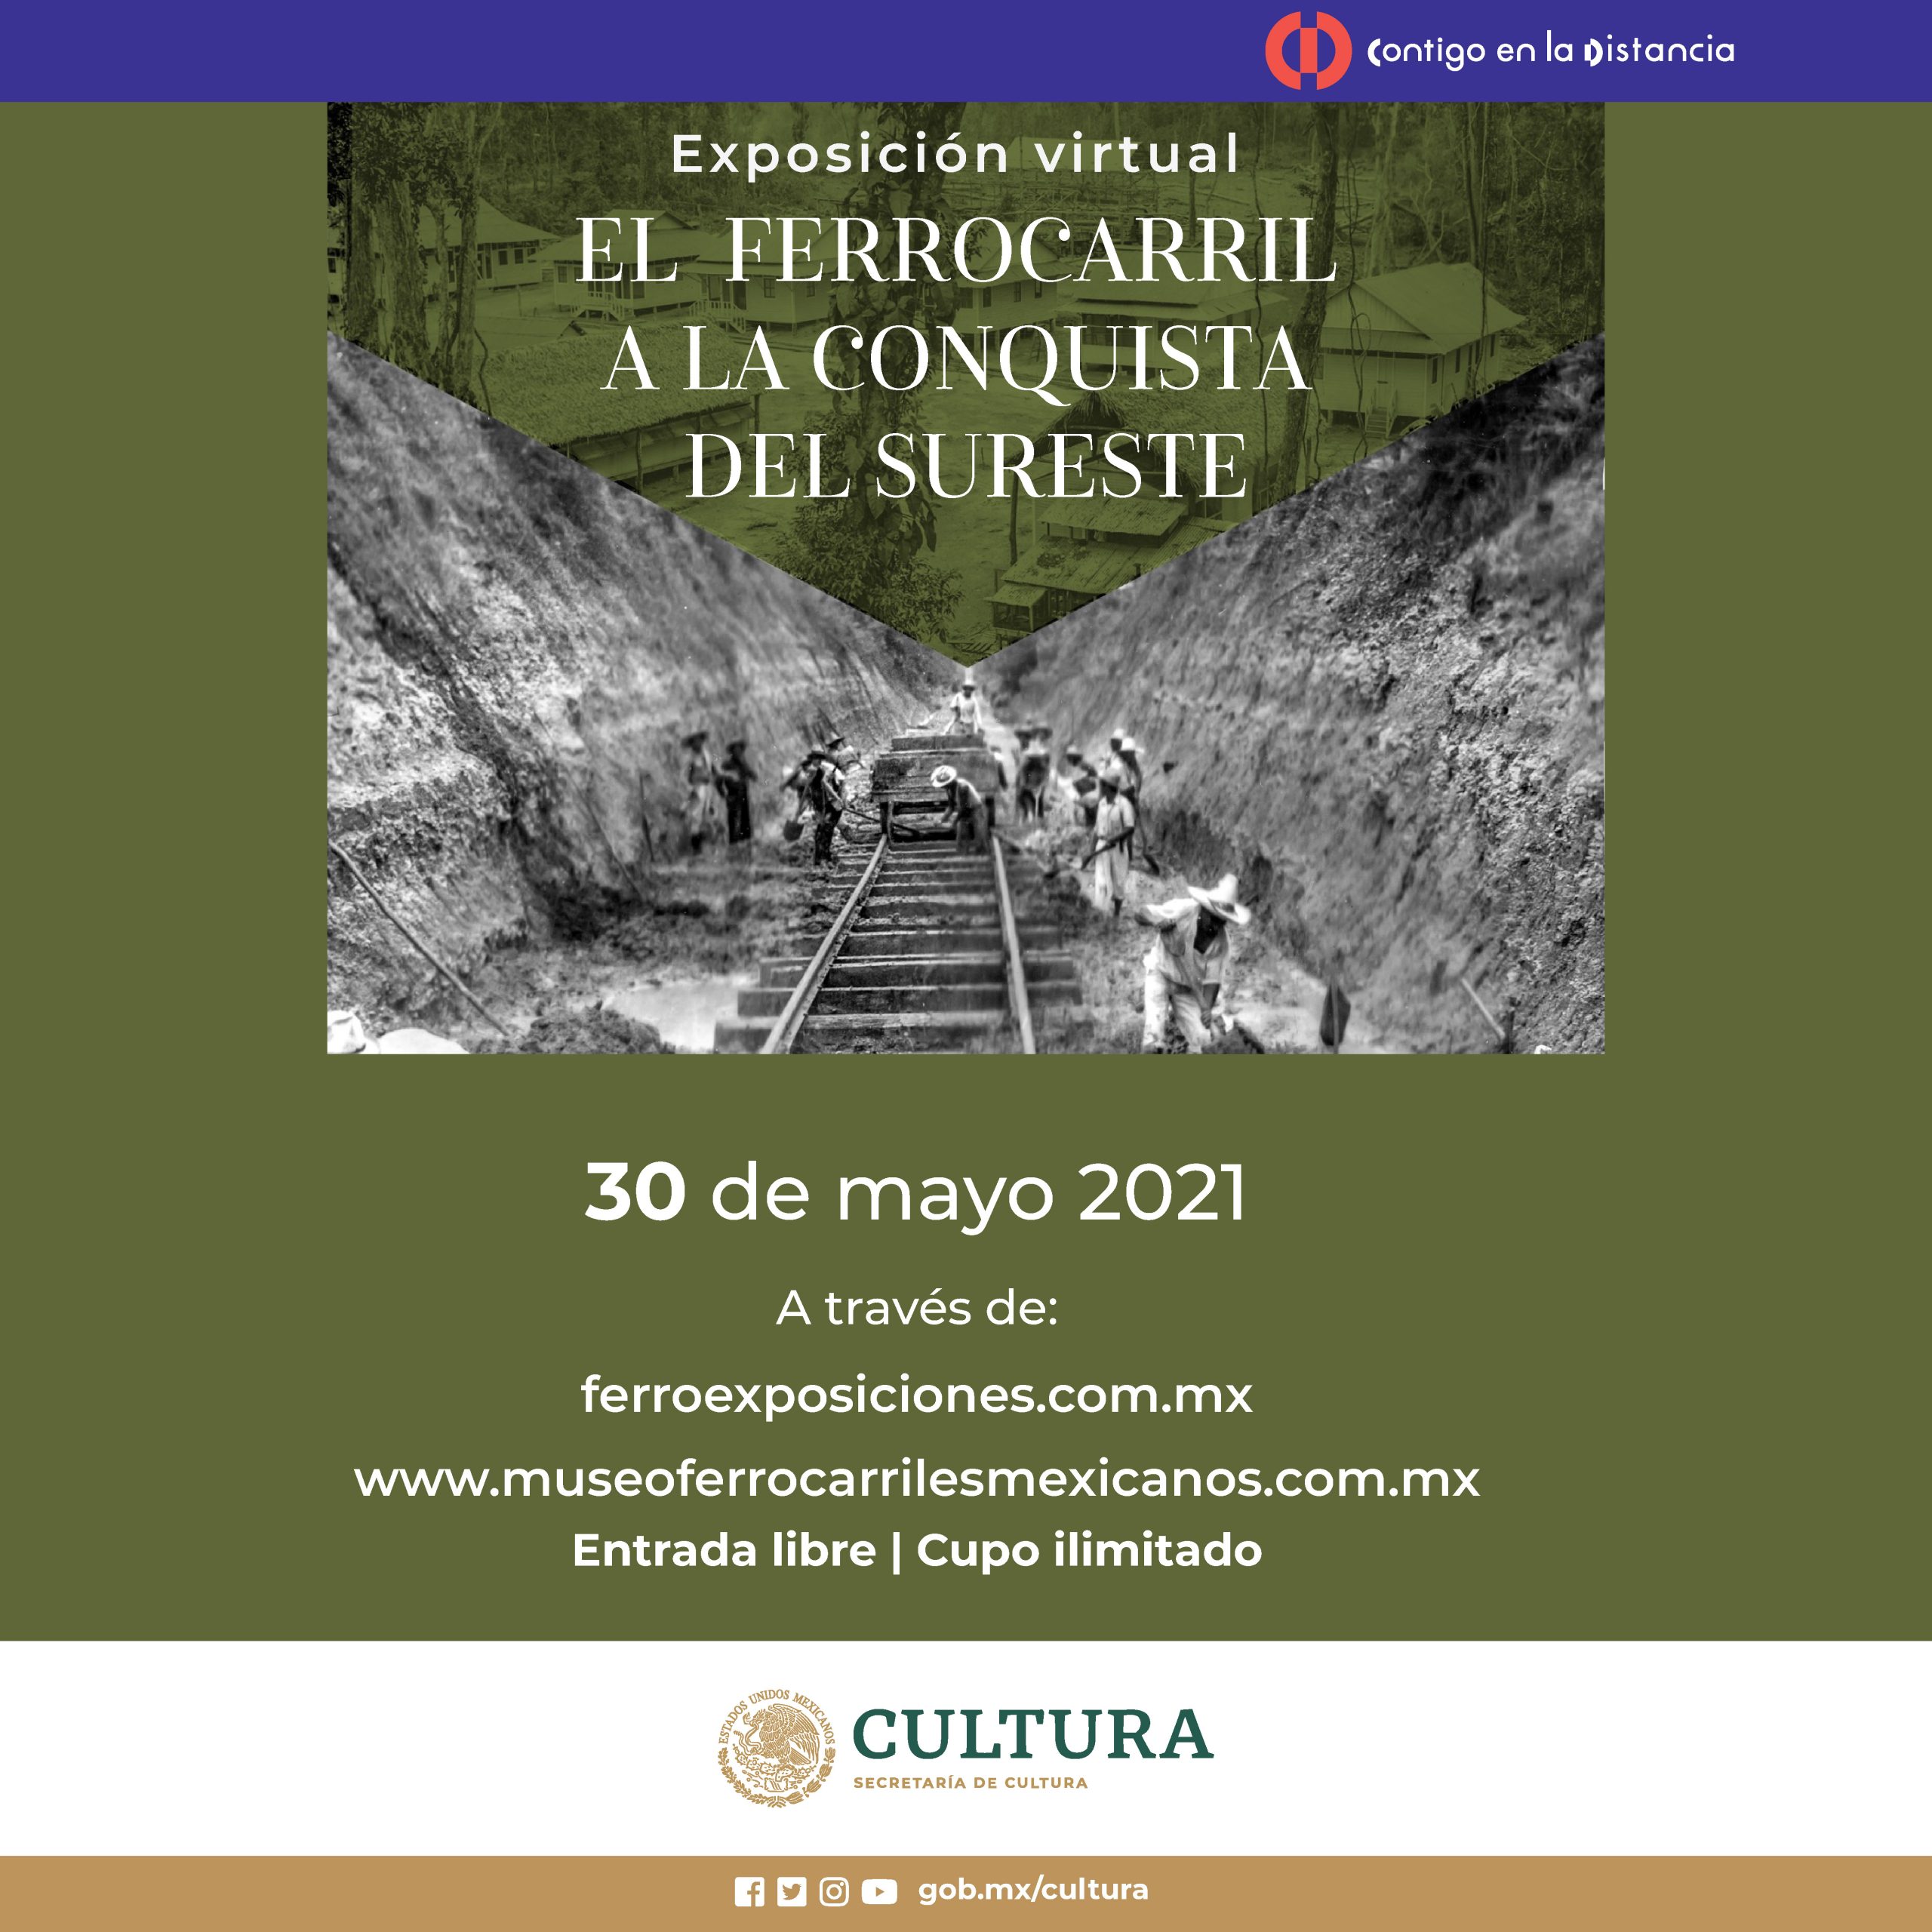 El Museo Nacional de los Ferrocarriles Mexicanos abre al público dos exposiciones fotográficas